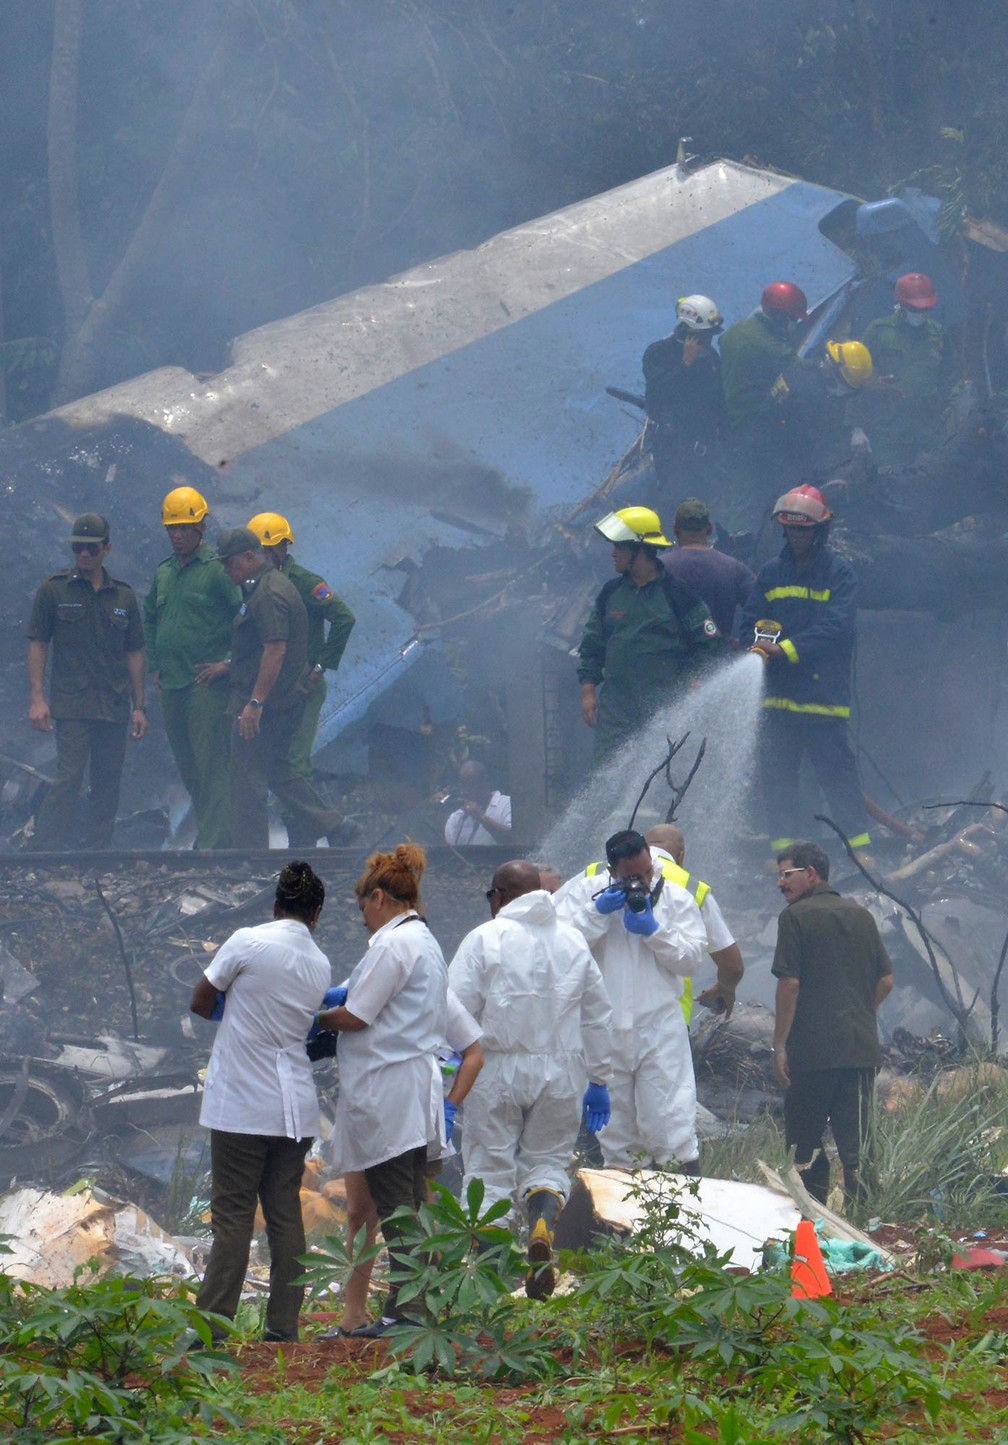 Equipes de resgate trabalham no local onde um avião com 113 pessoas a bordo caiu logo após decolagem em Havana, Cuba (Foto: Adalberto Roque/AFP)